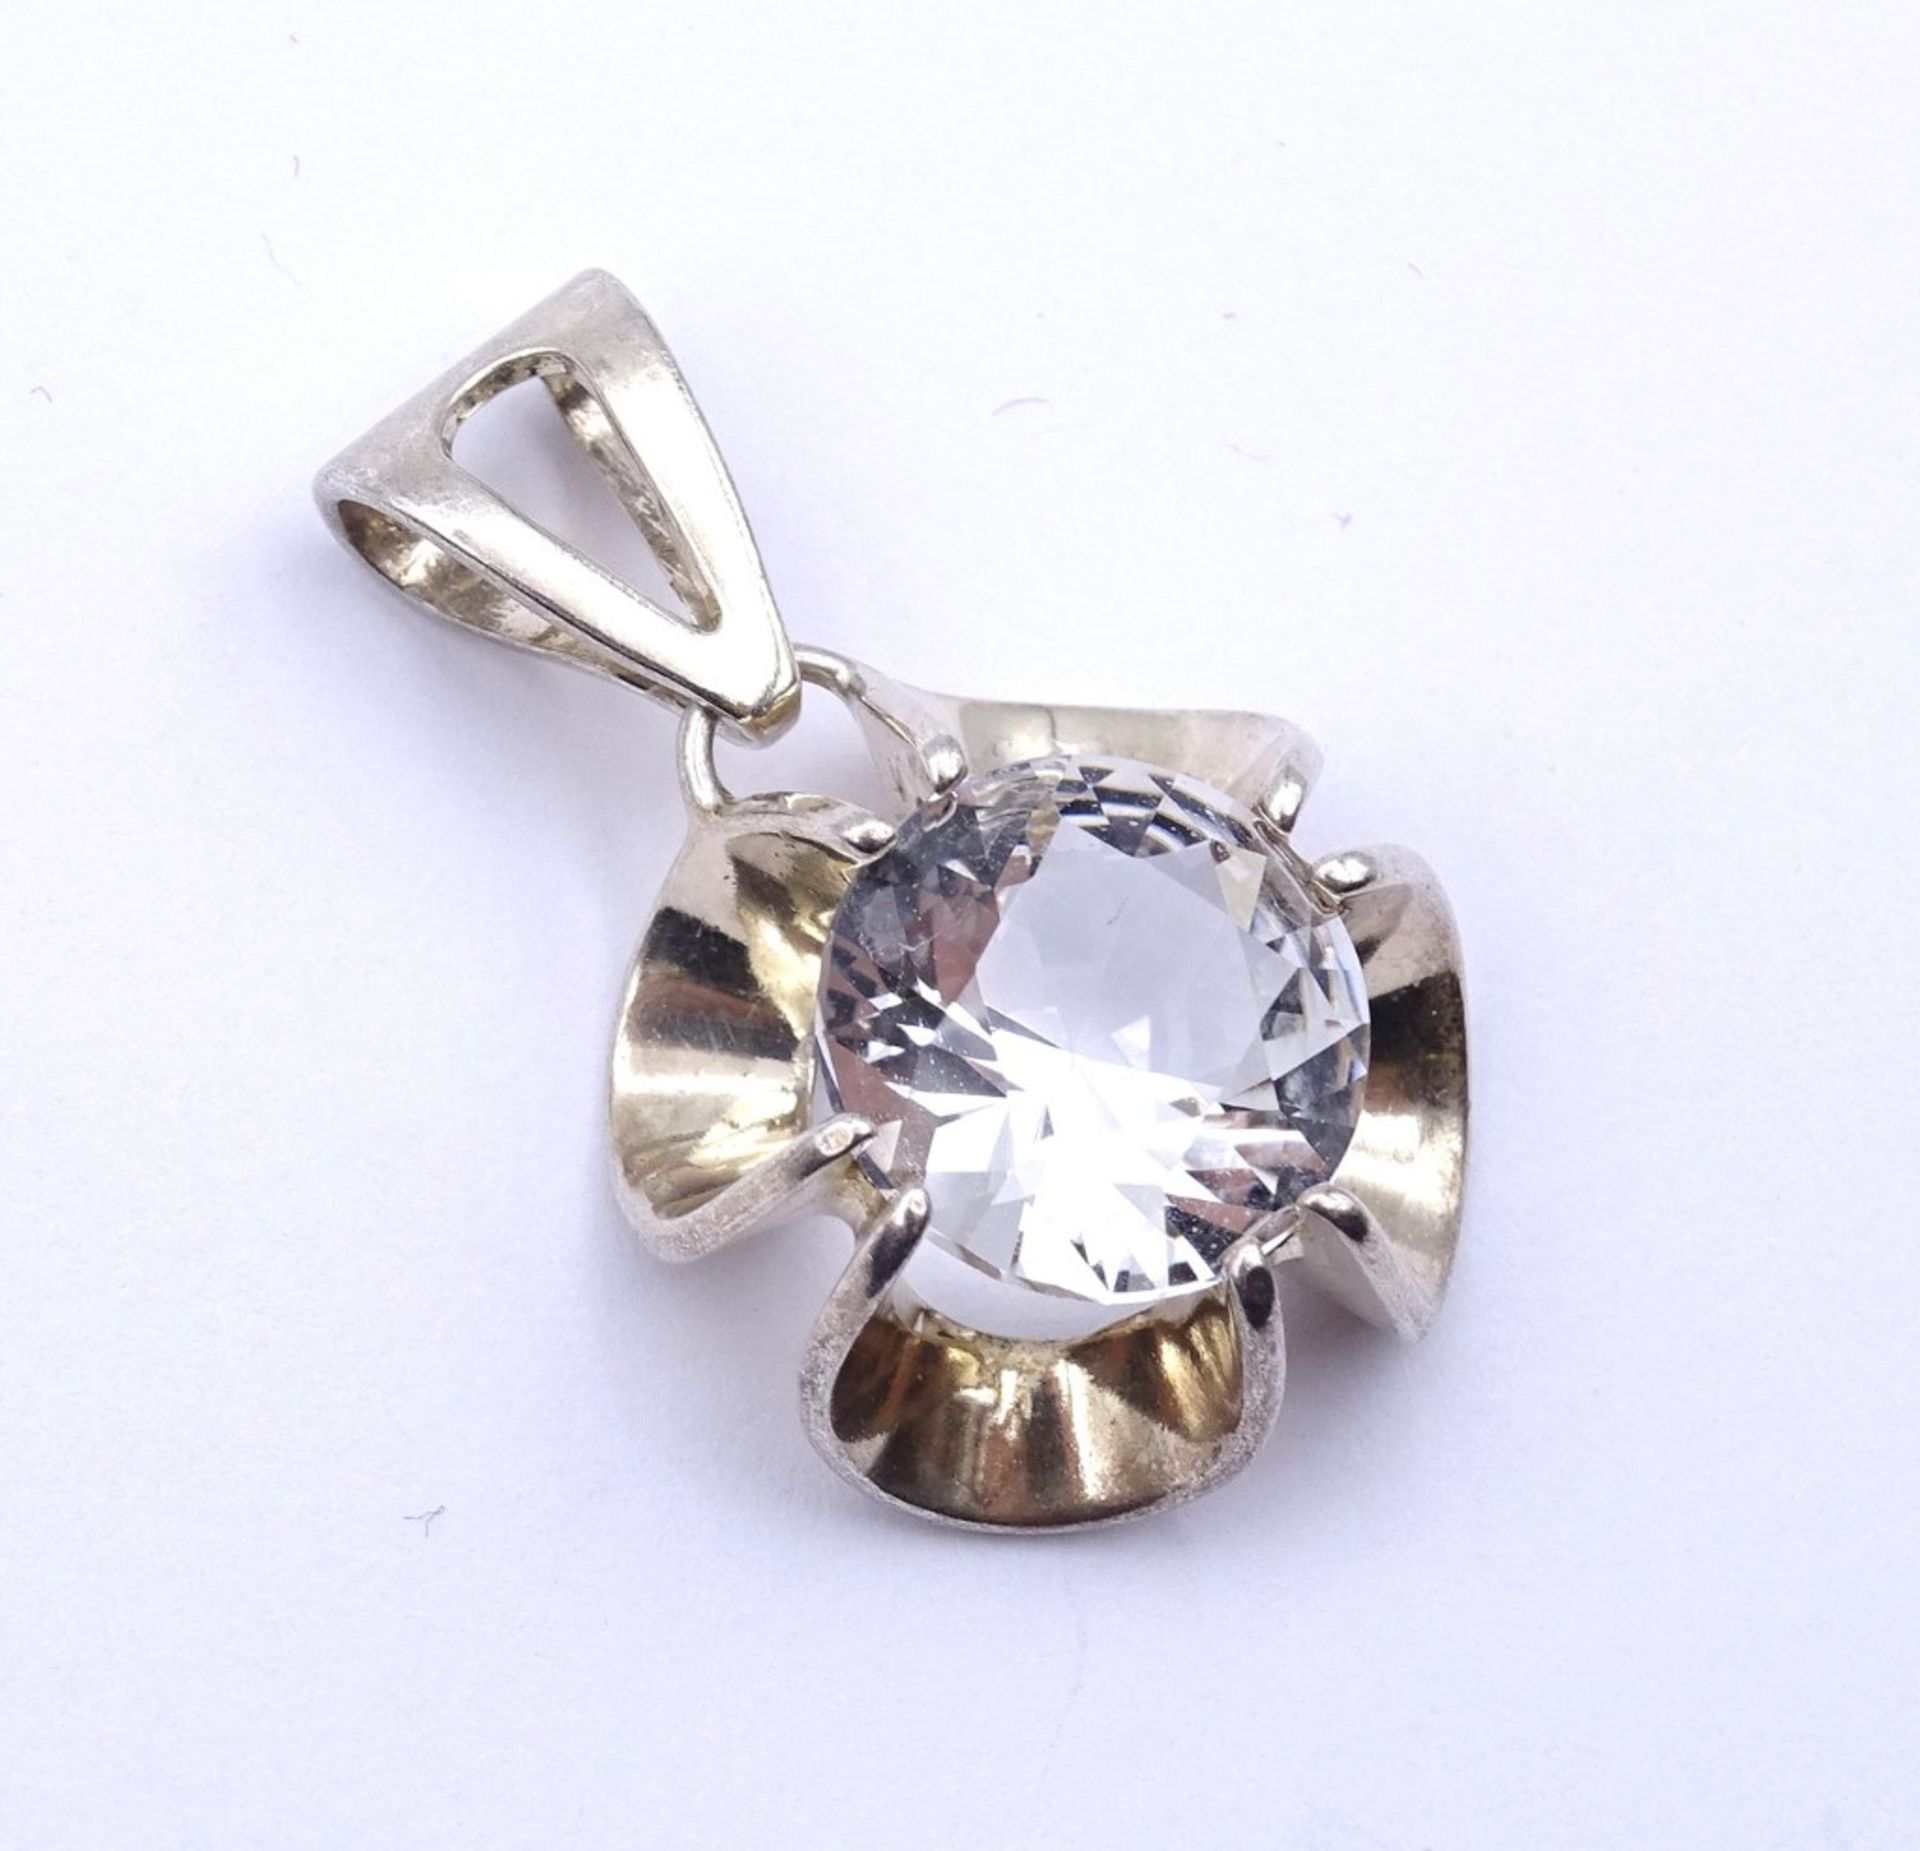 Silber Anhänger mit einen runden klaren Stein (kein Bergkristall), Silber 0.835, L- 3,3cm, 6,2g. - Bild 2 aus 3